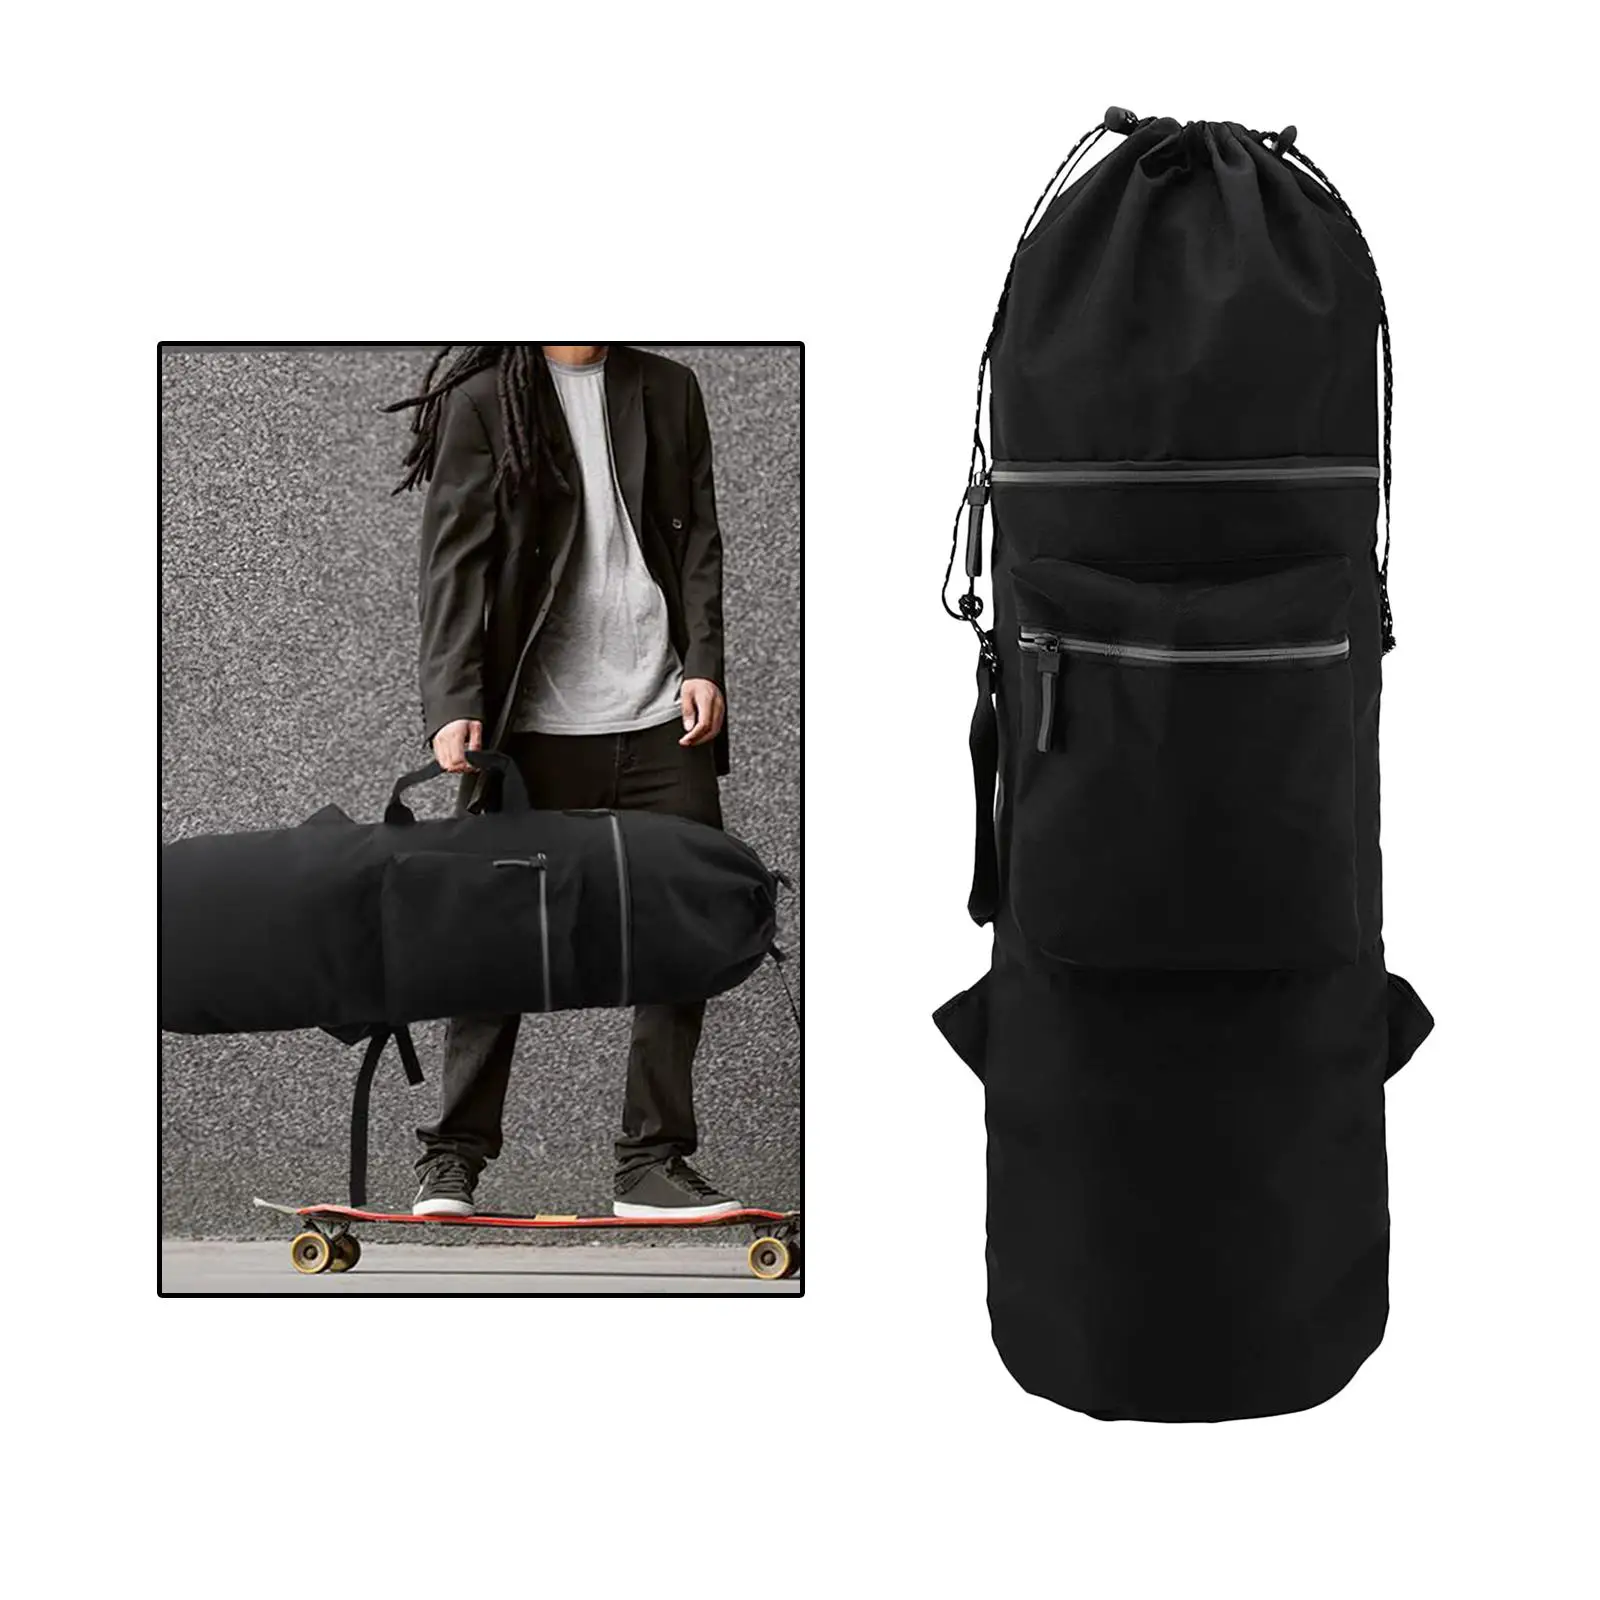 Skateboard Backpack Carry Bag 600D Oxford Cloth Adjustable Shoulder Straps